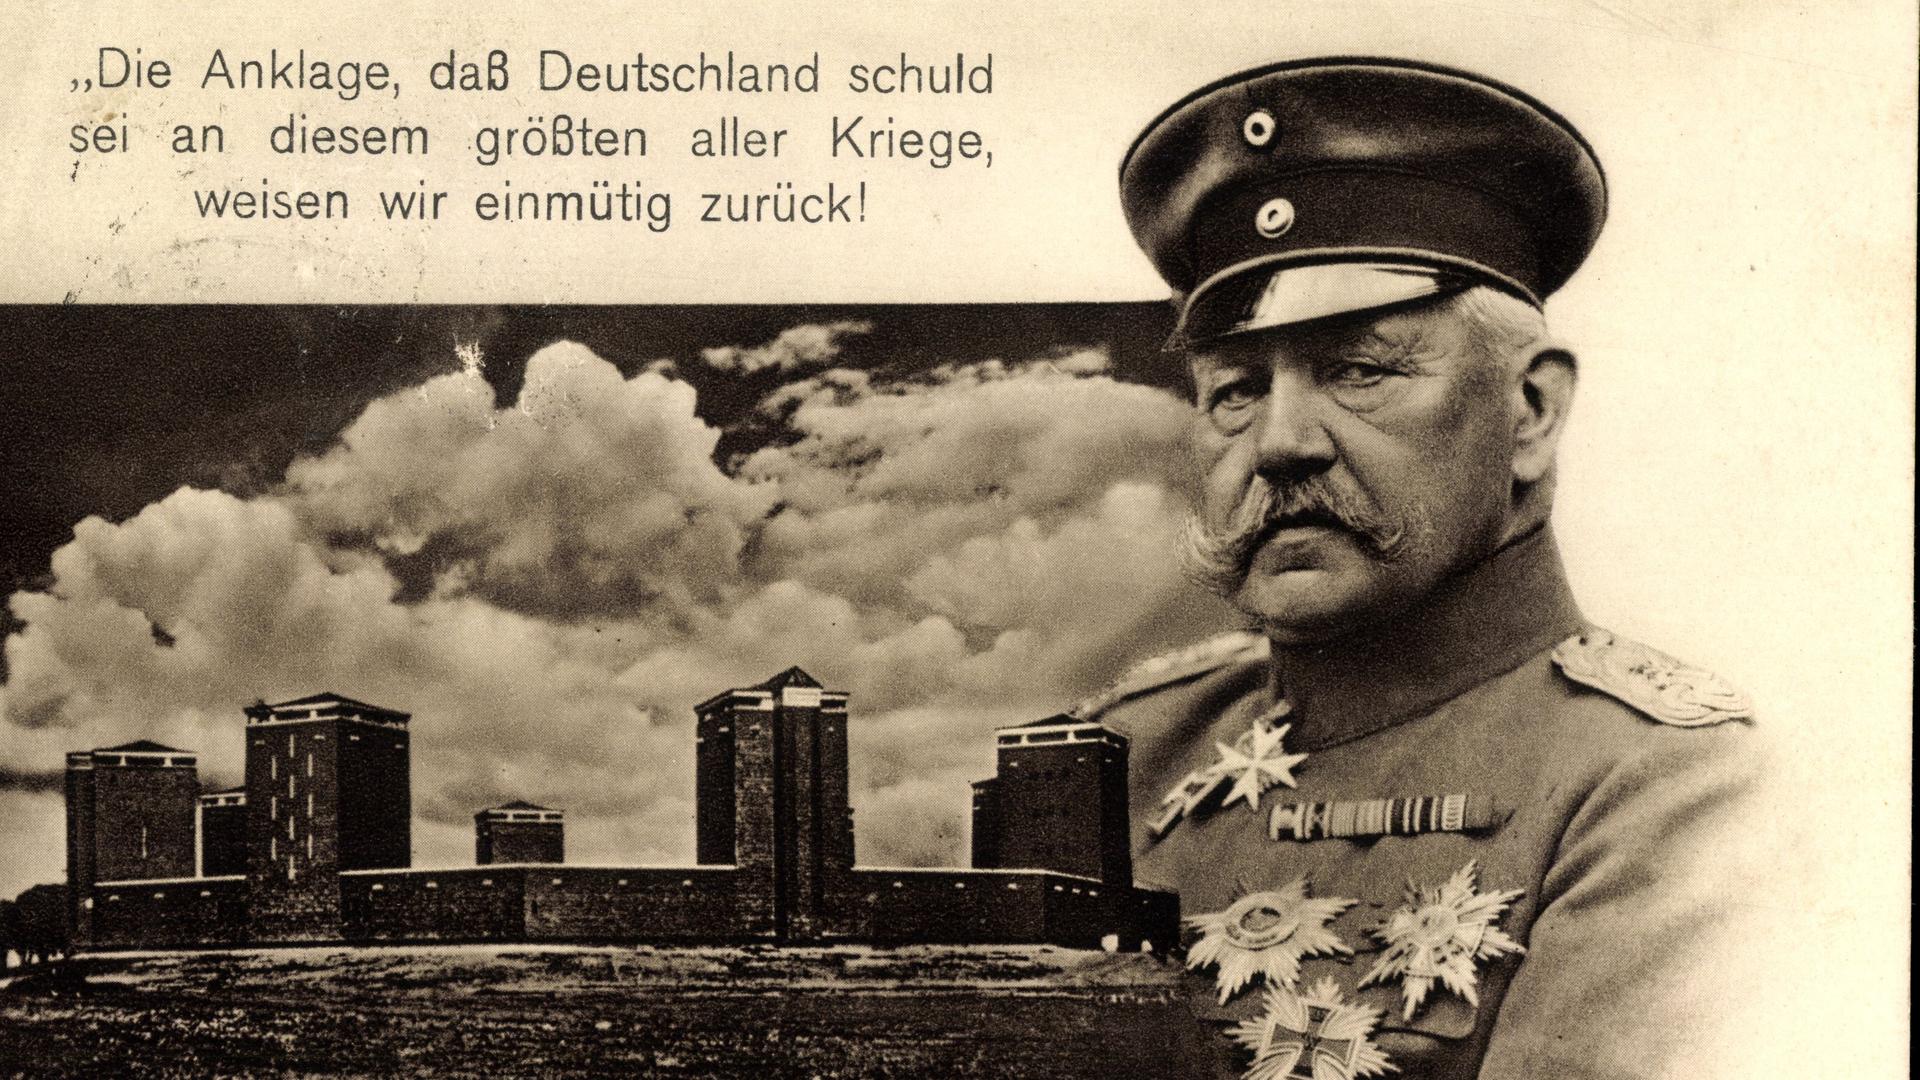 Karte mit einem Bild und einem Zitat von Paul von Hindenburg: "Die Anklage, daß Deutschland schuld sei an diesem größten aller Kriege, weisen wir einmütig zurück!"